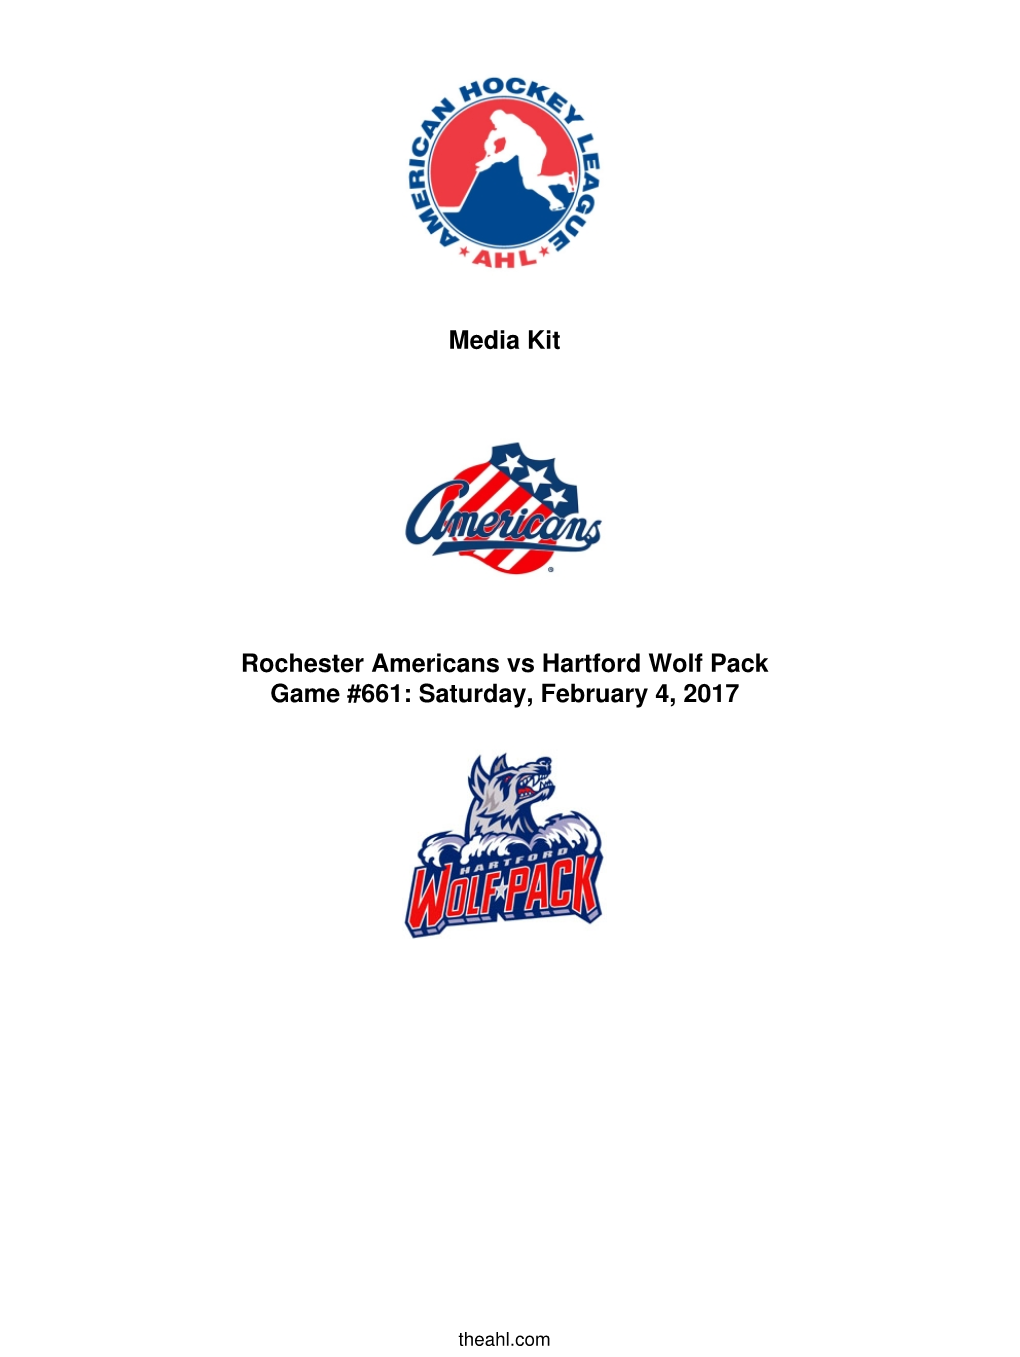 Media Kit Rochester Americans Vs Hartford Wolf Pack Game #661